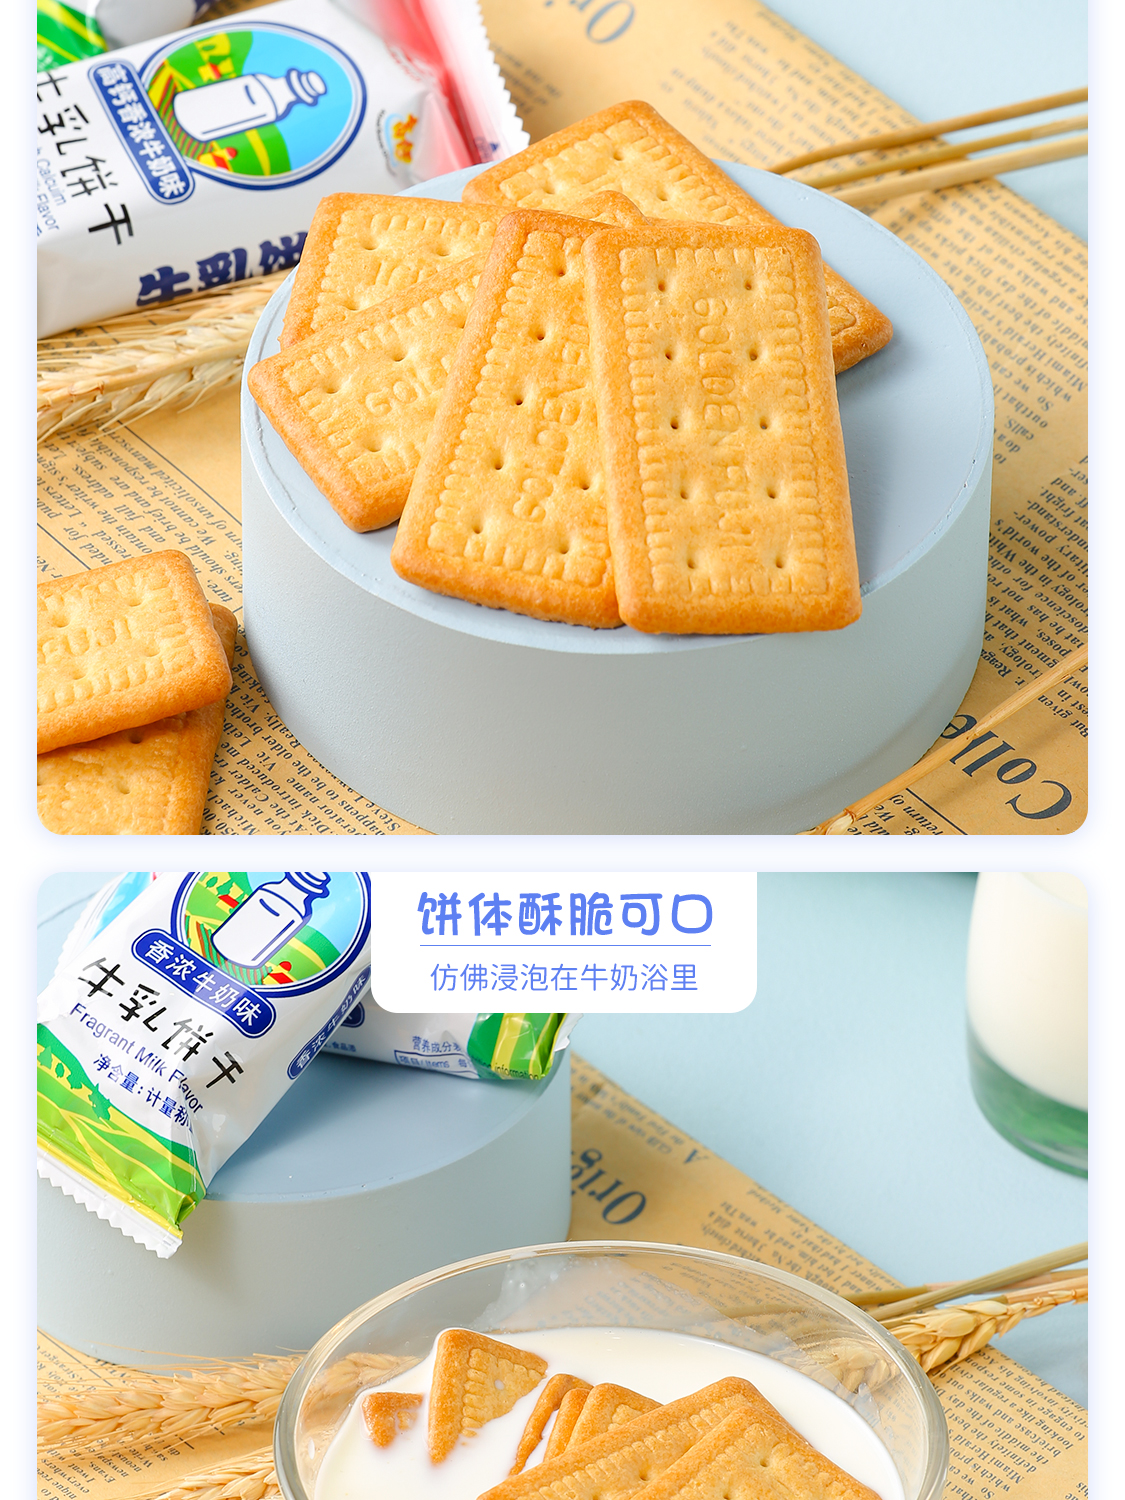 【首单+签到】金富士香浓牛奶饼干1000g